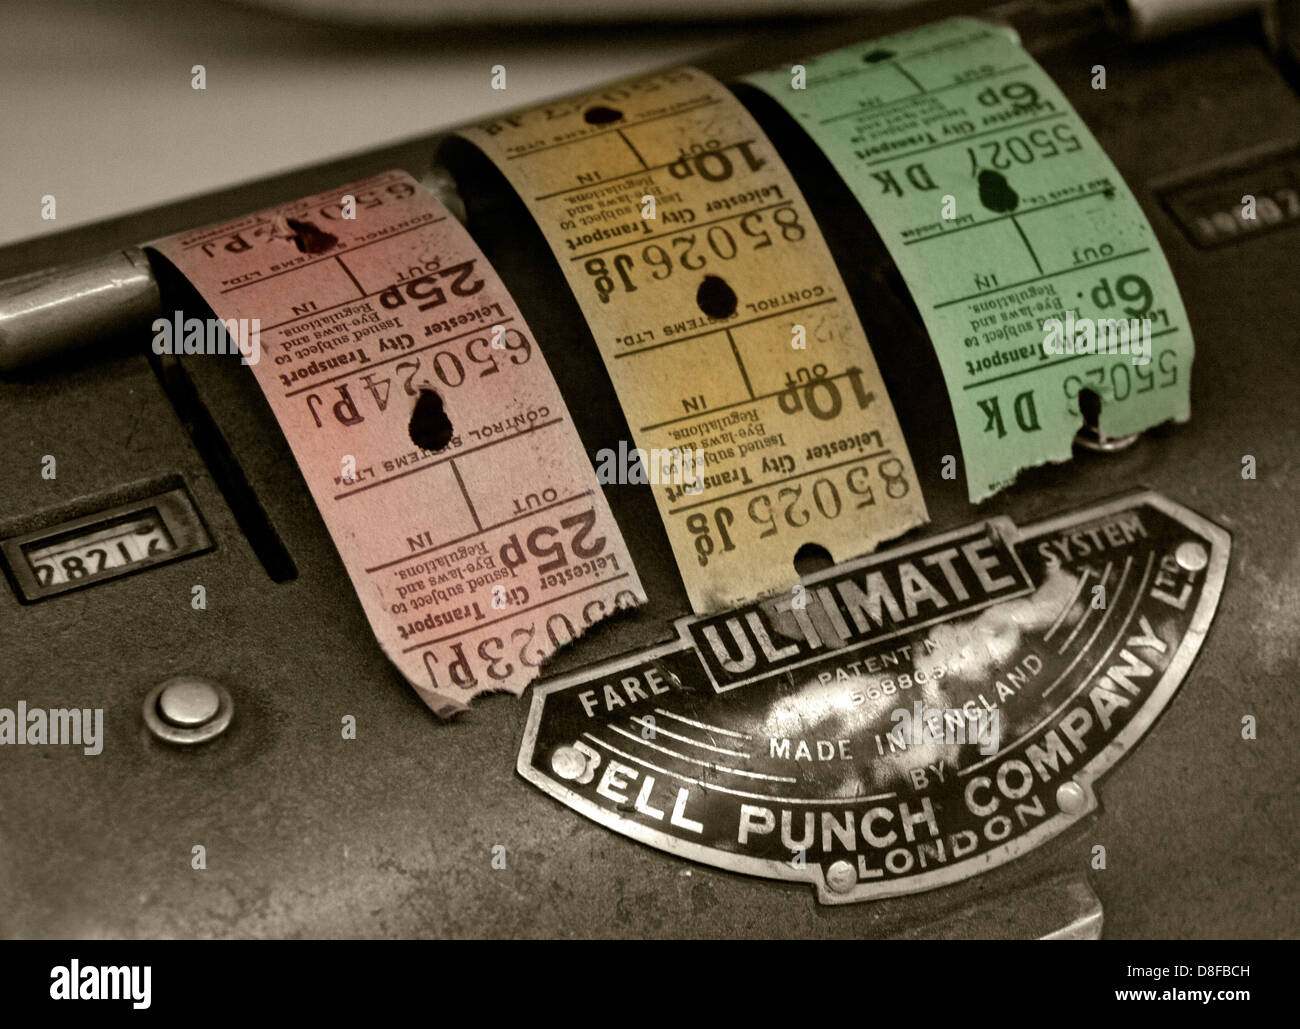 Bell Punch machine ticket de bus et billets de Coventry, Angleterre, Royaume-Uni Banque D'Images